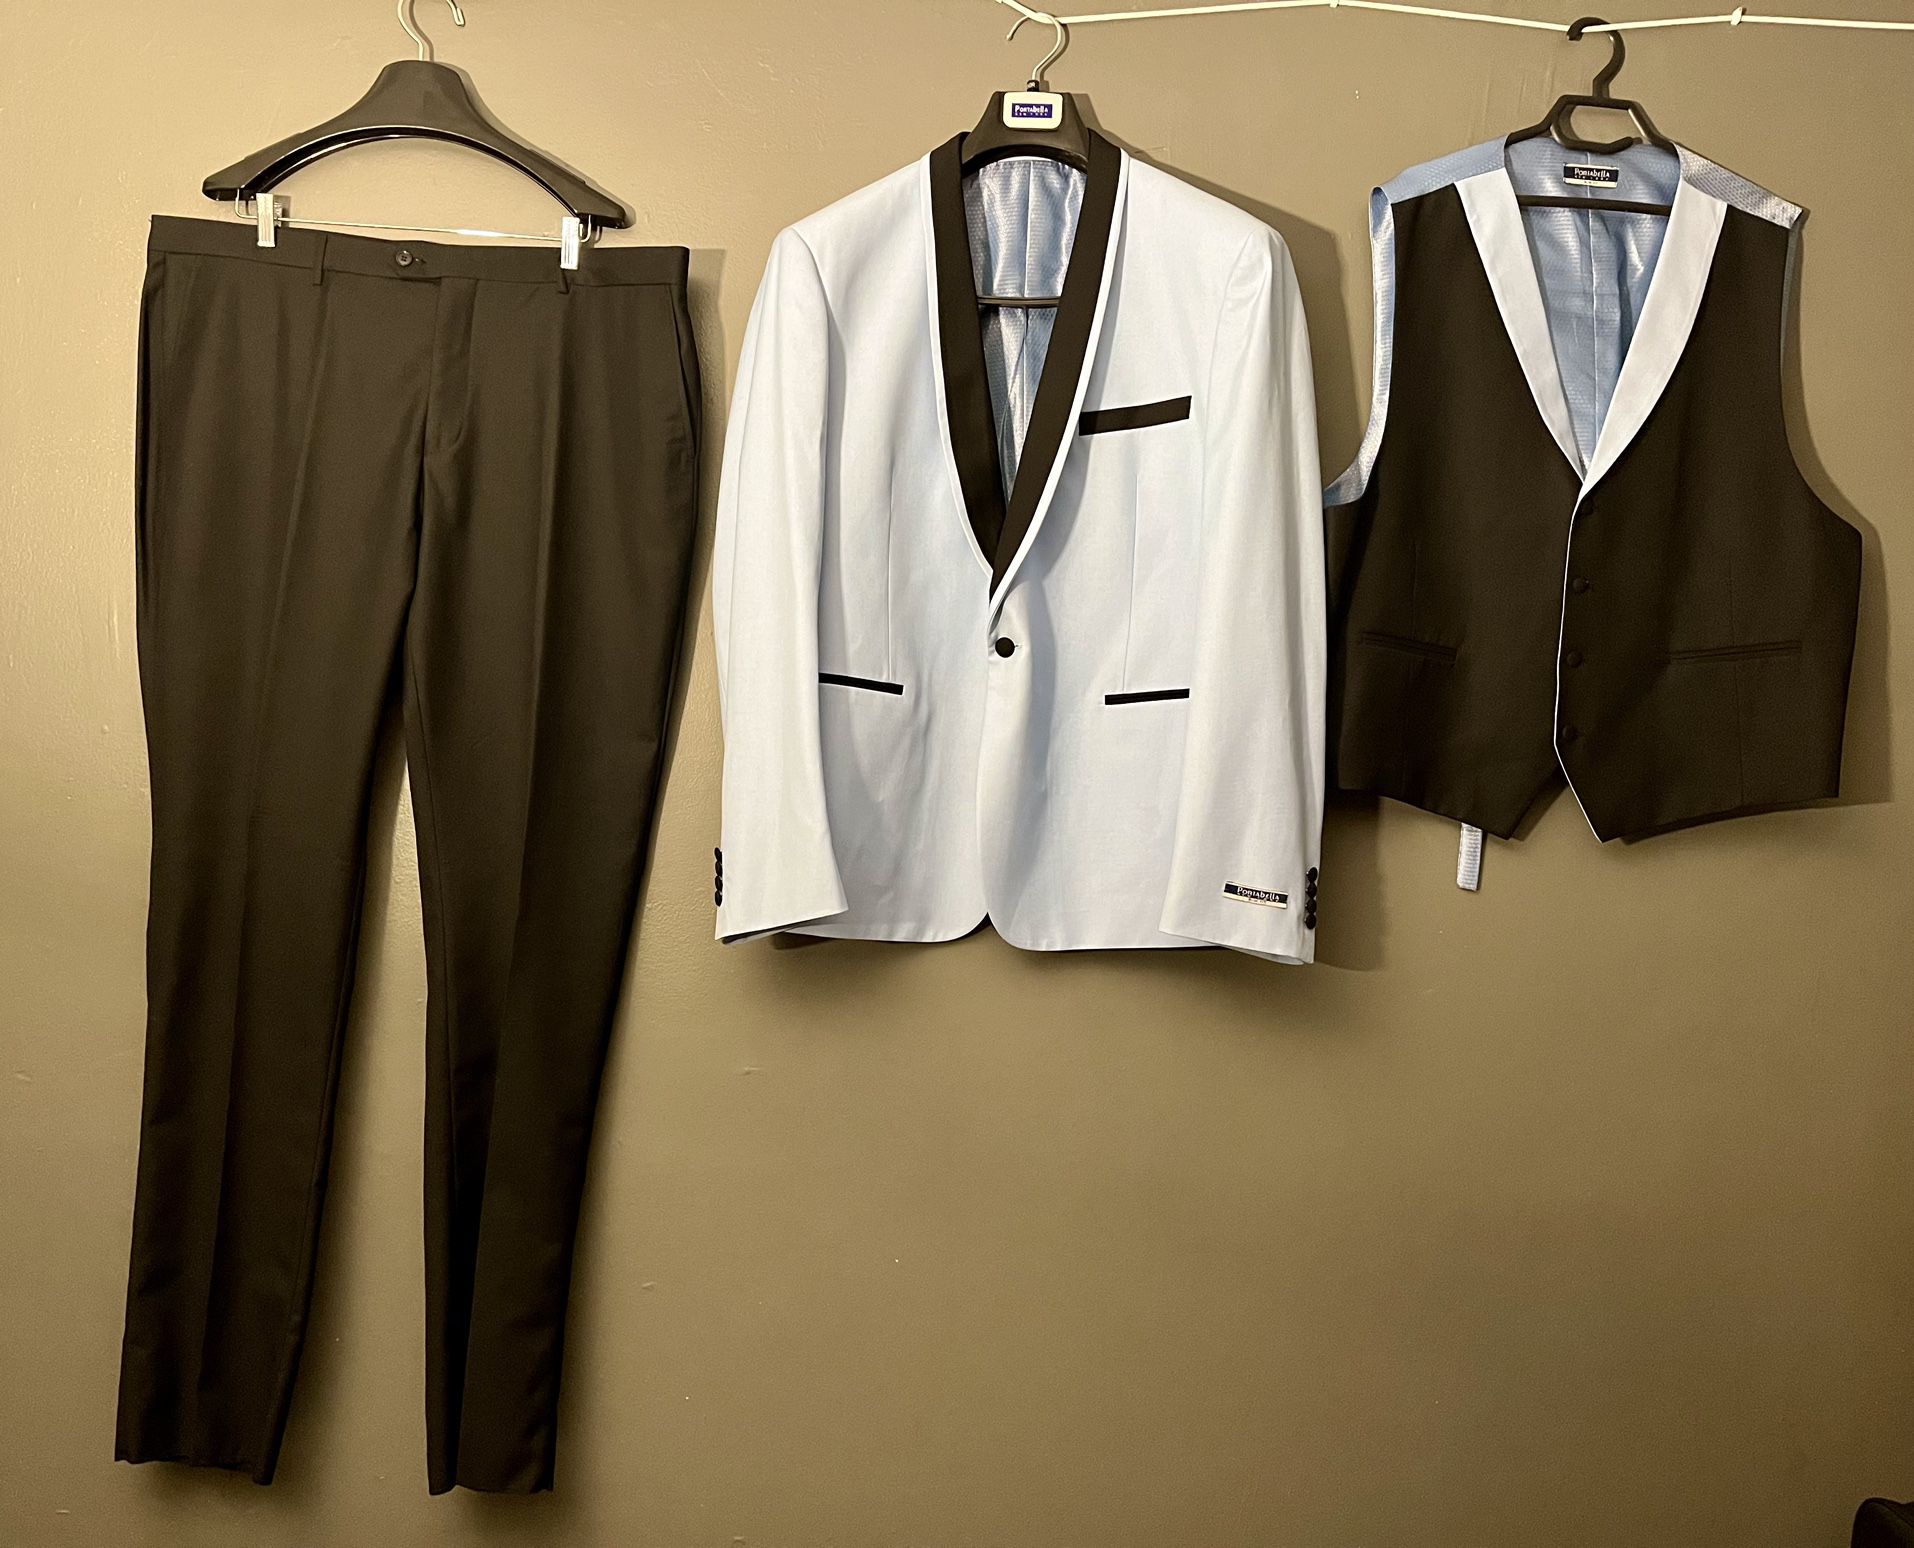 Men’s 3 Piece Slim Fit Blazer / Vest/ Pants Tuxedo Set Suits Sz 50R/44W